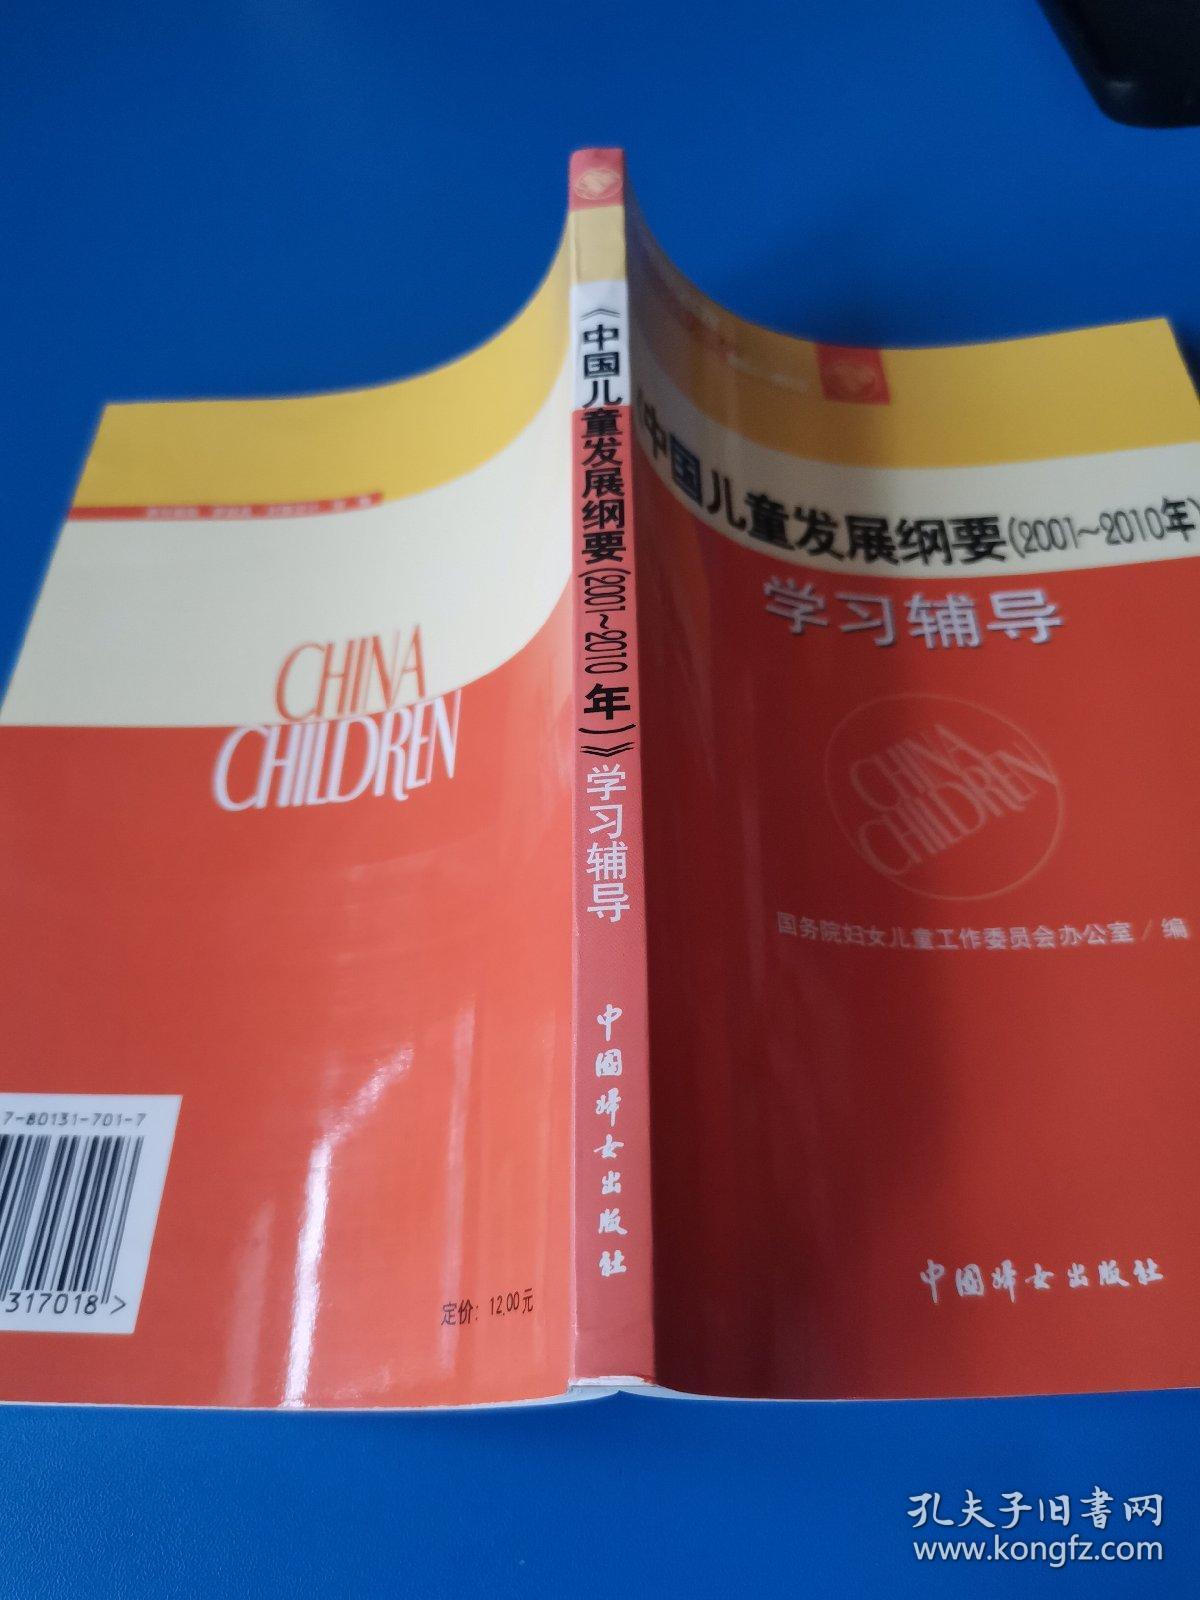 《中国儿童发展纲要(2001～2010年)》学习辅导